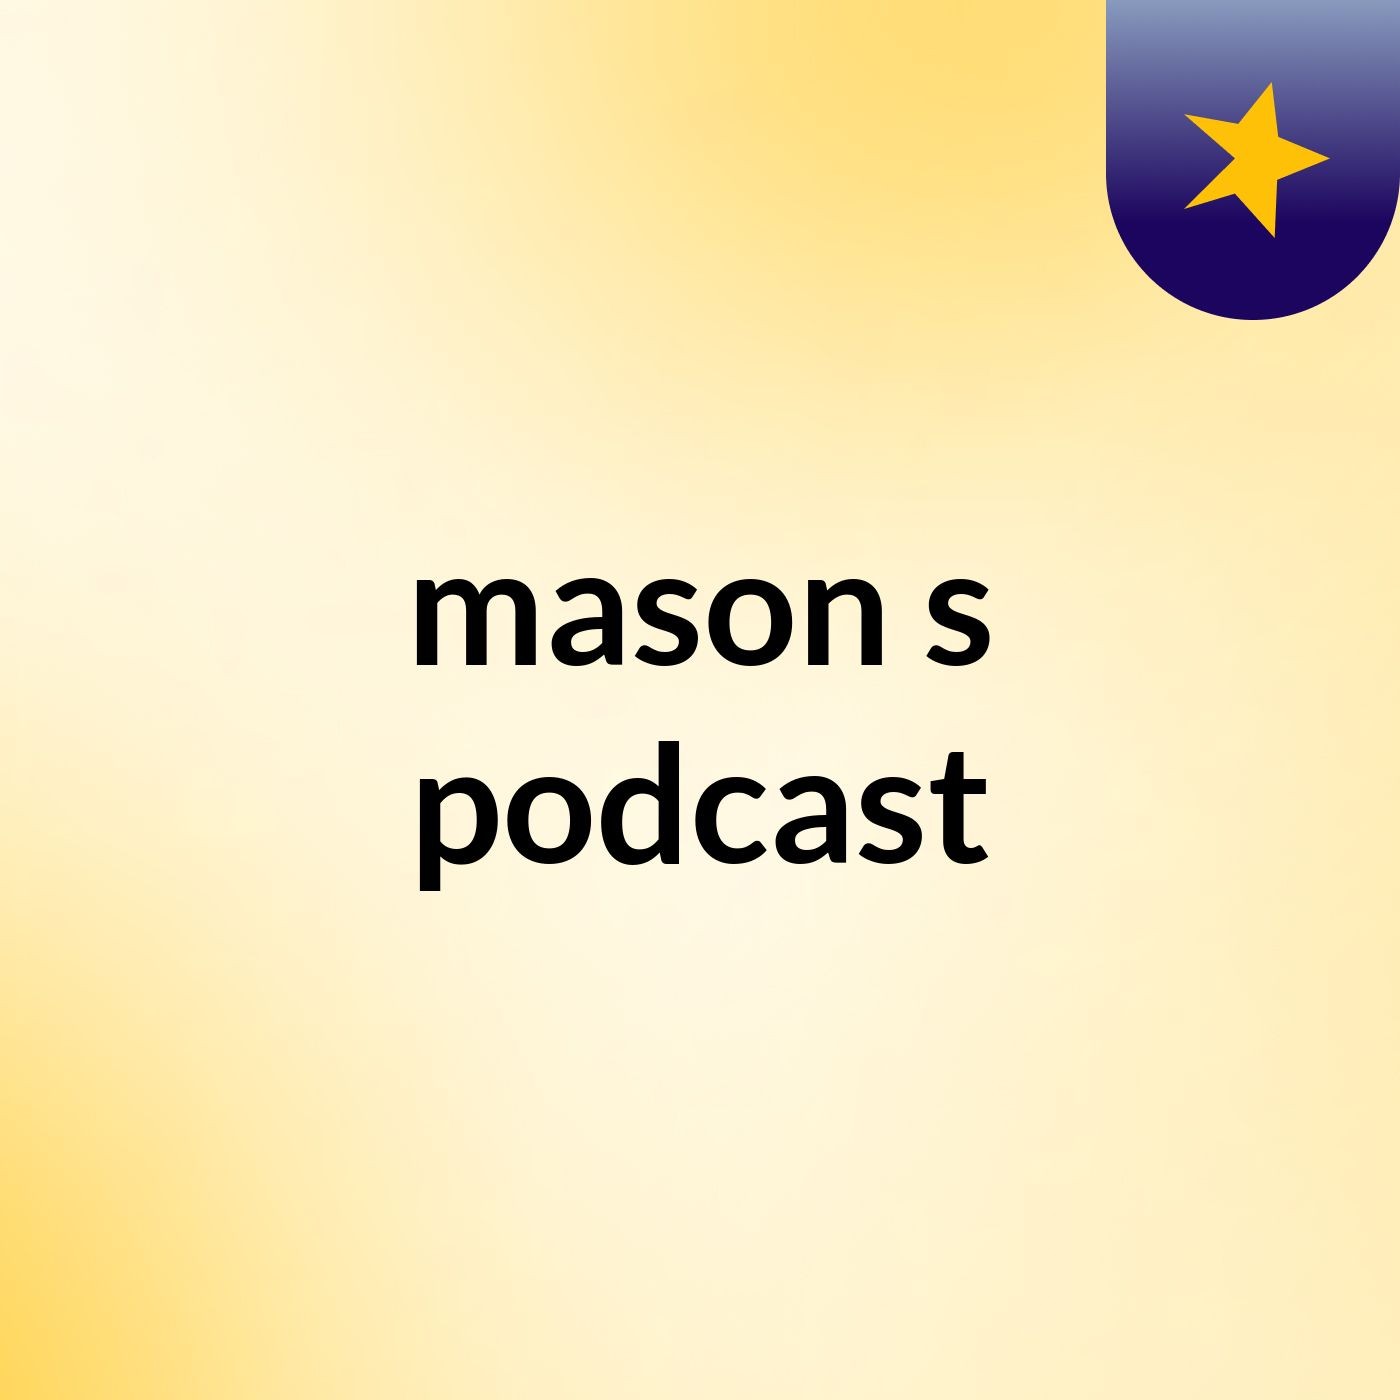 mason's podcast